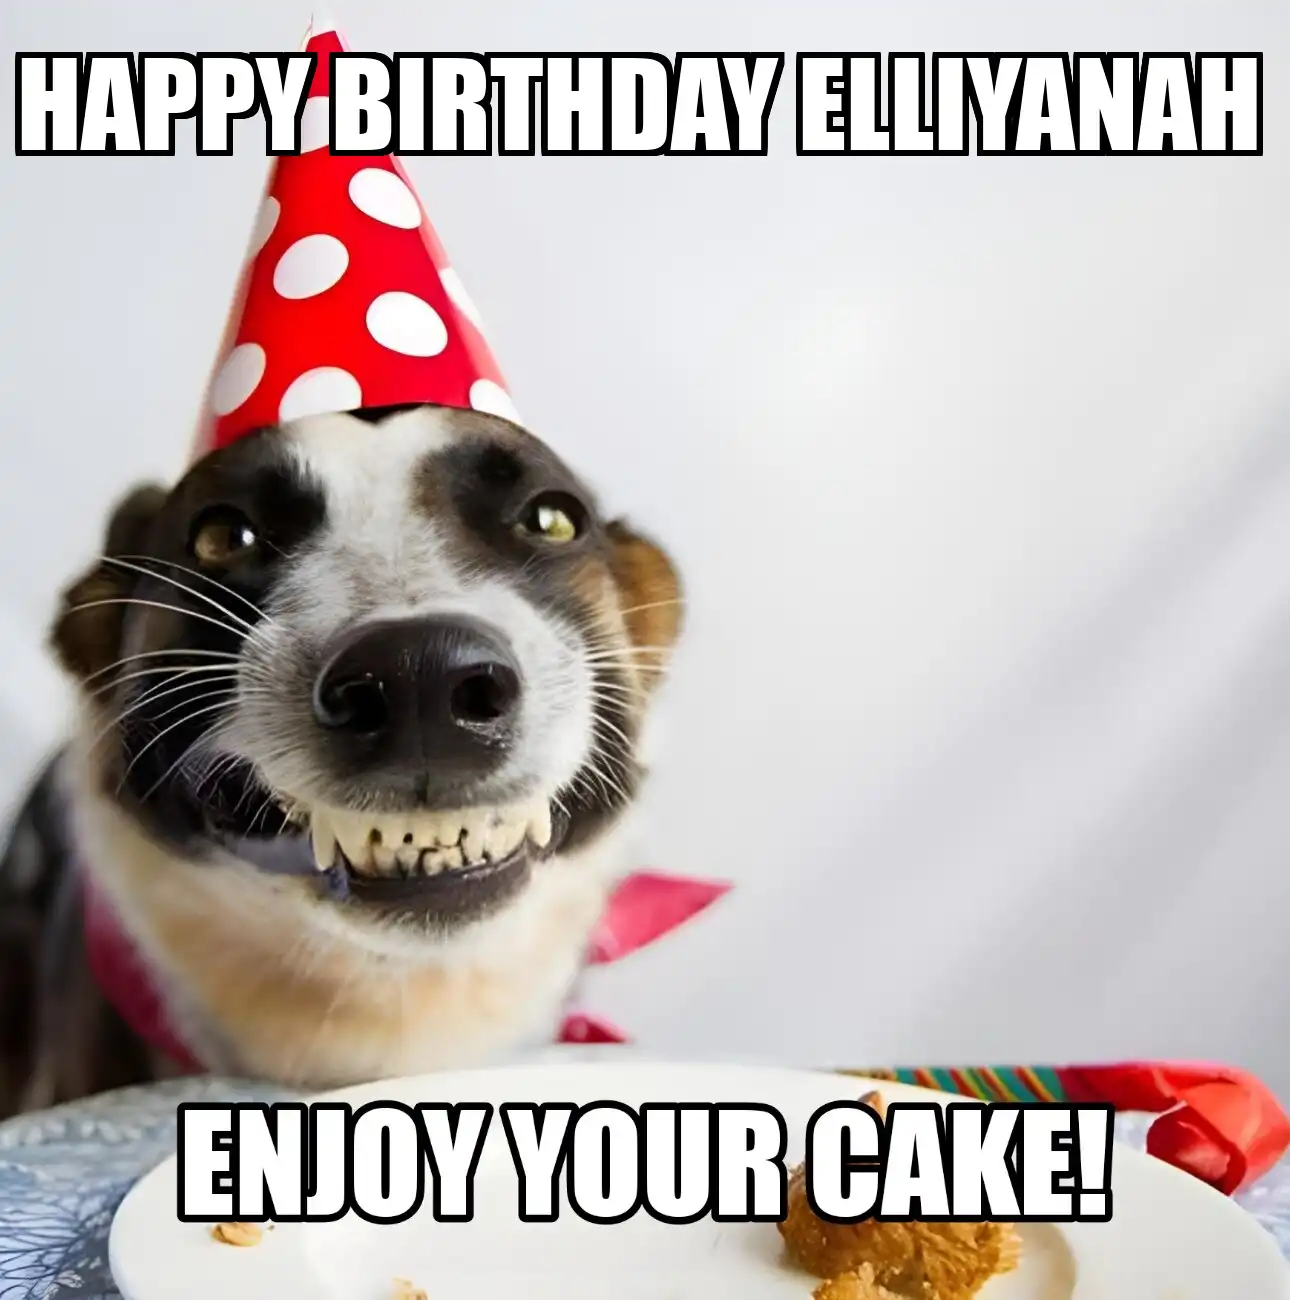 Happy Birthday Elliyanah Enjoy Your Cake Dog Meme